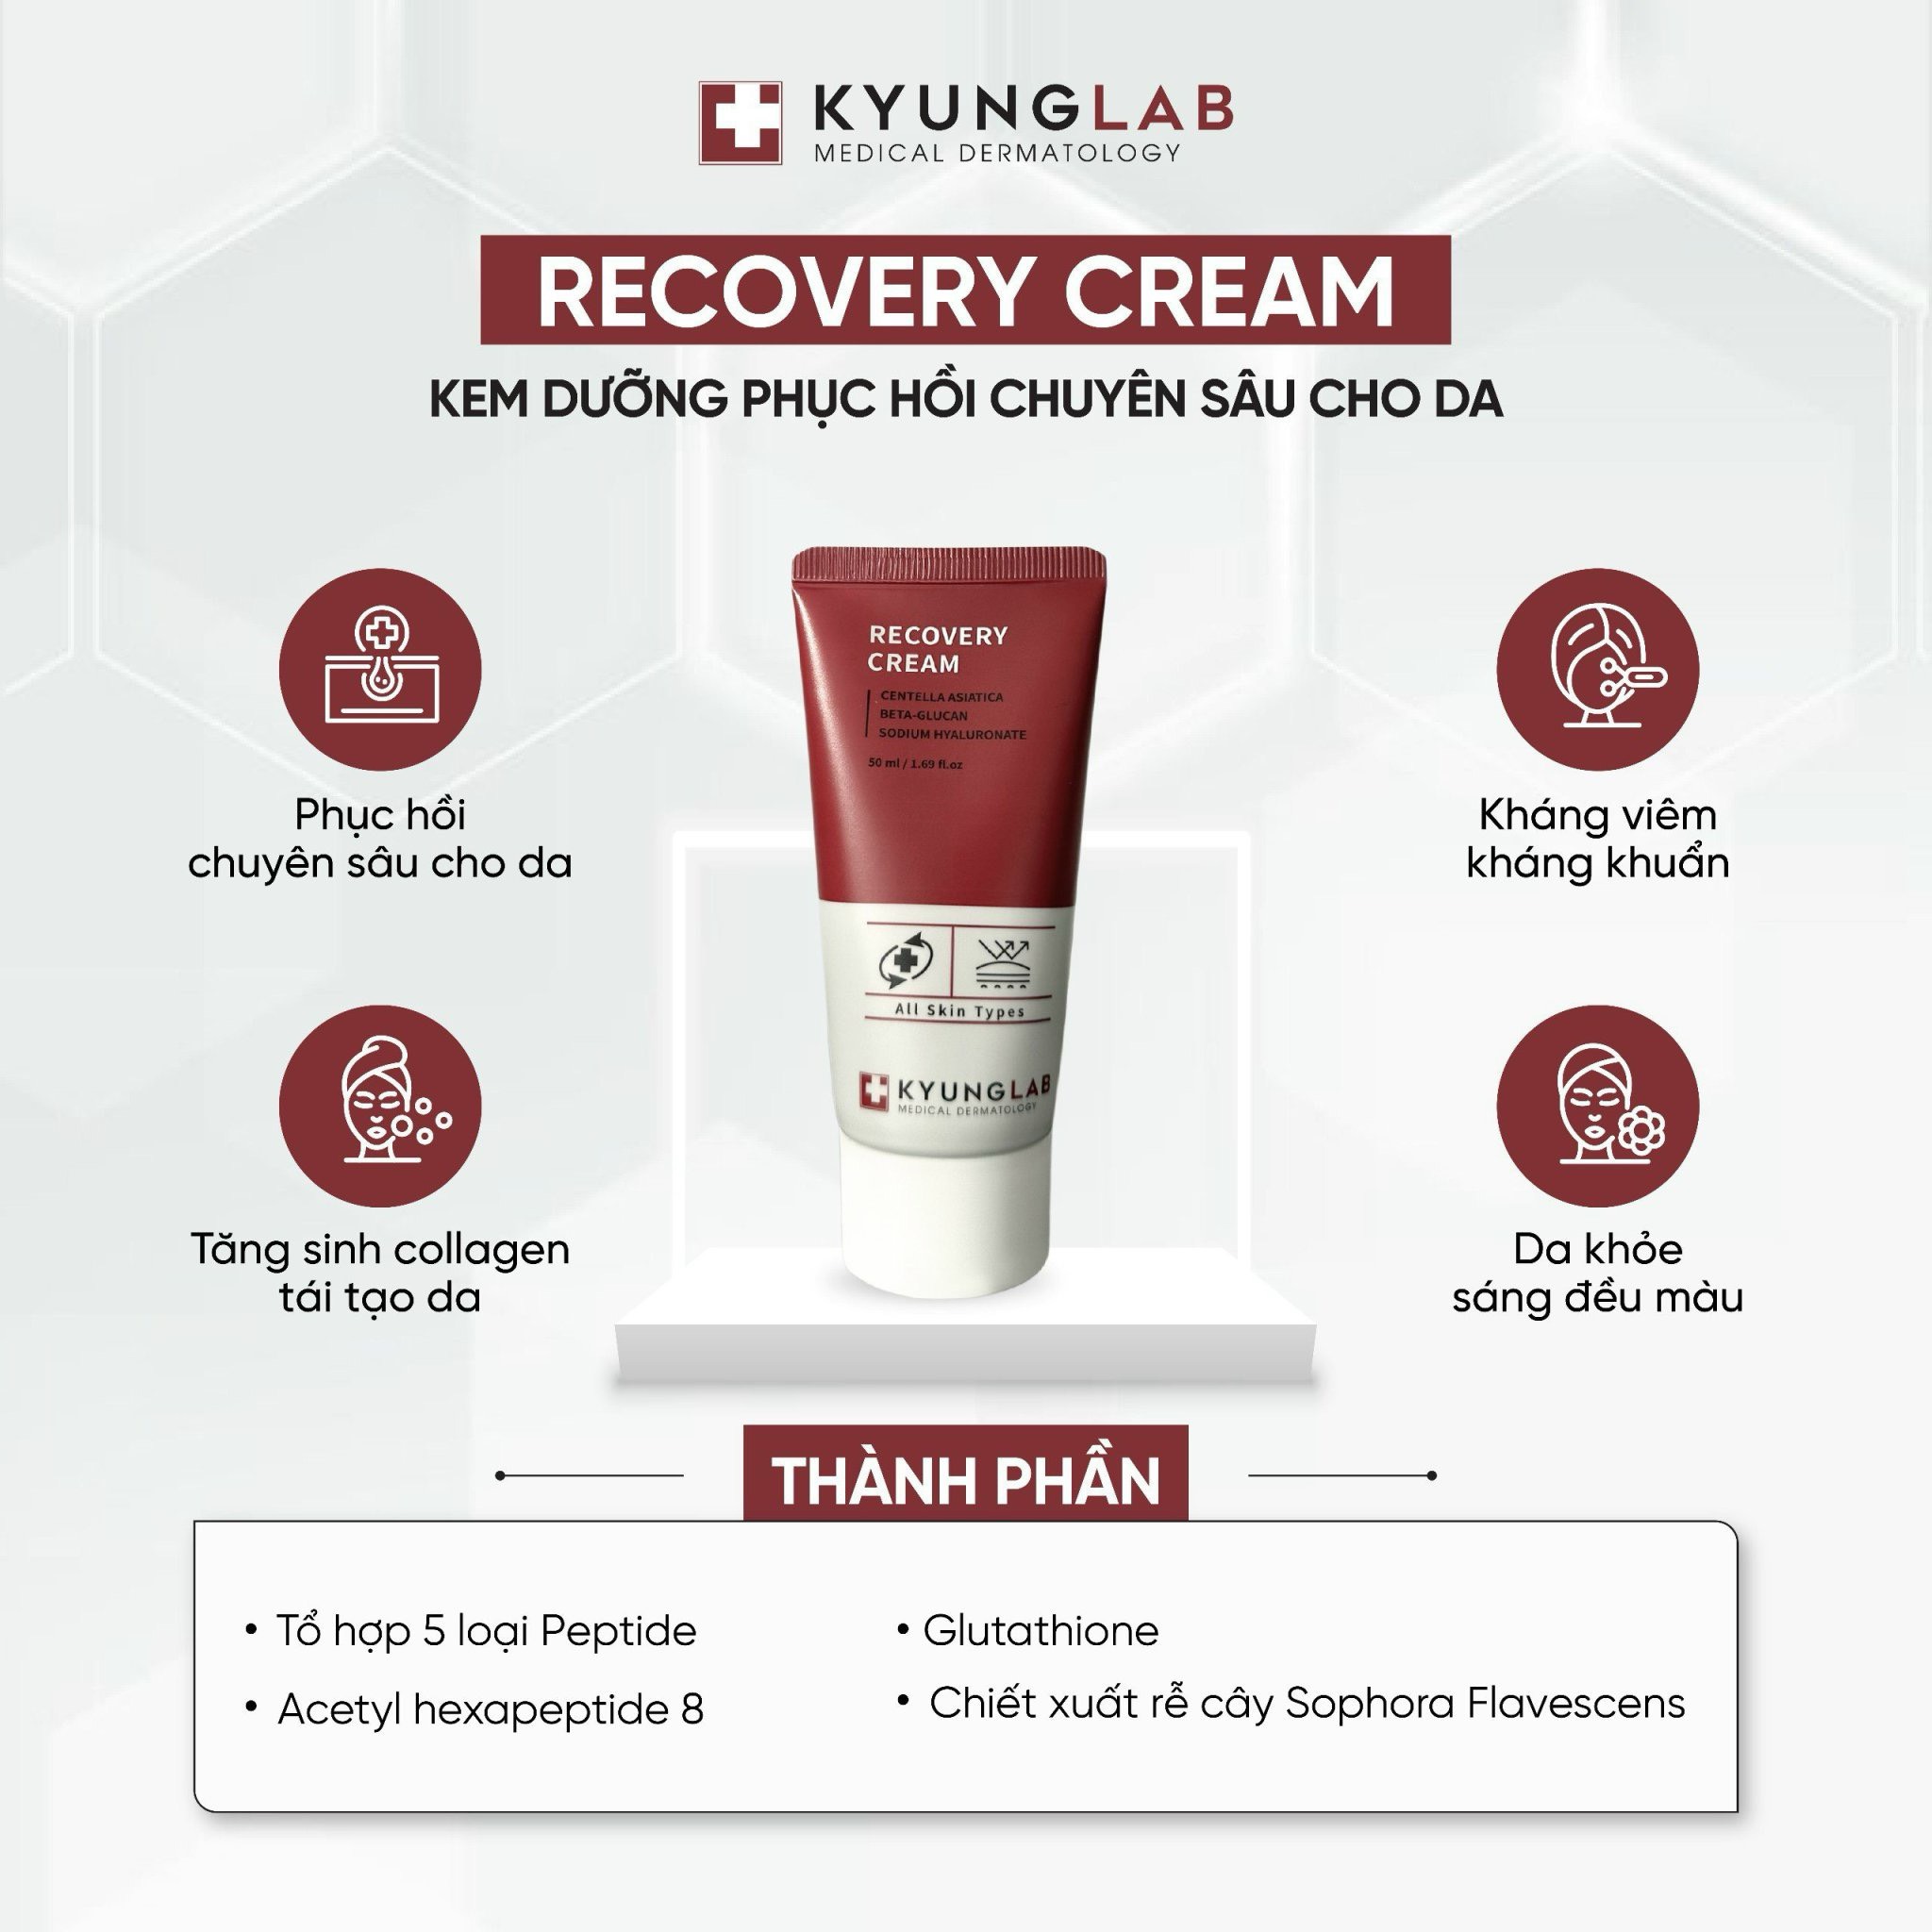 Kem dưỡng phục hồi chuyên sâu Recovery Cream Kyung Lab (C/50Ml)